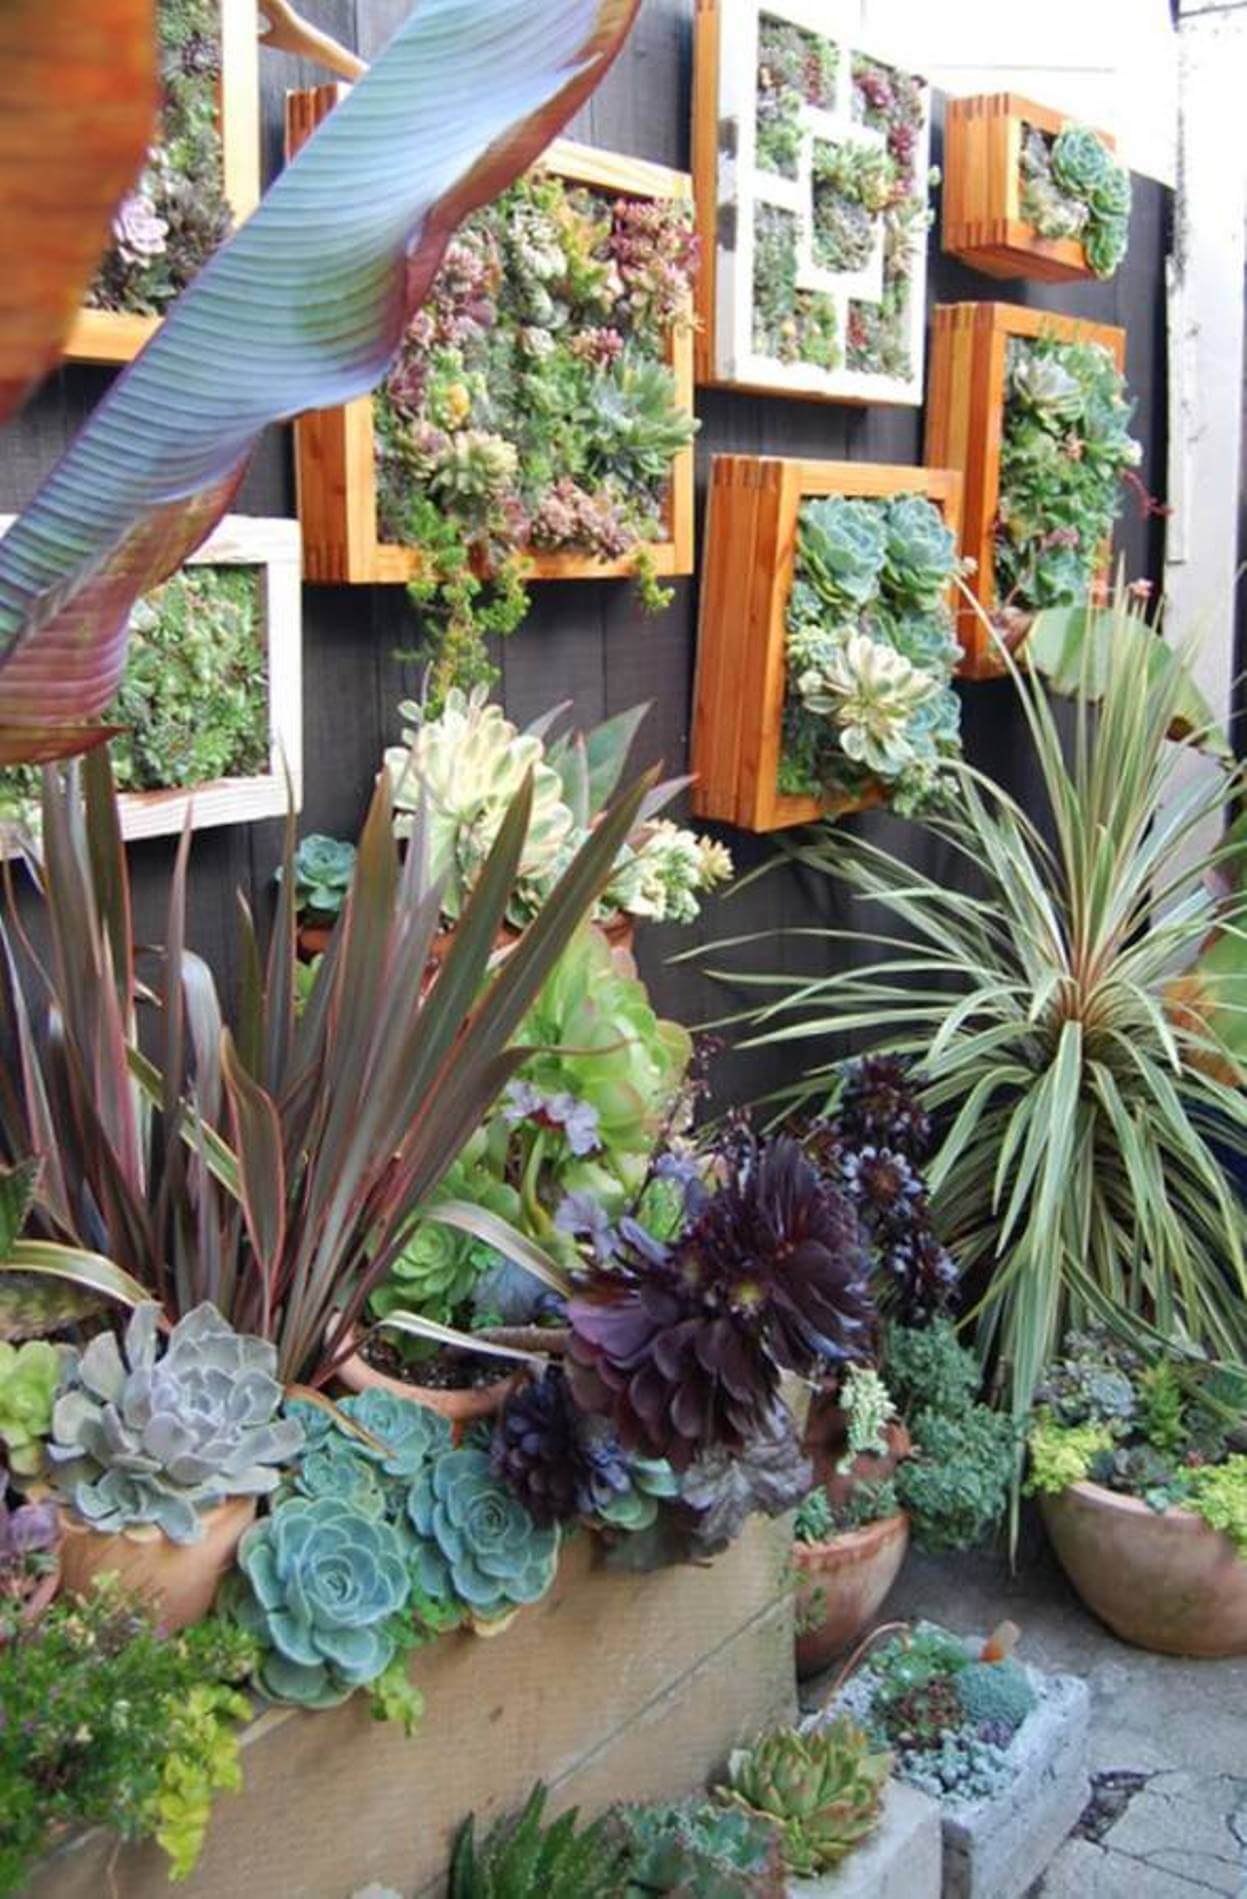 Natural Wood Frames House a Miniature Garden